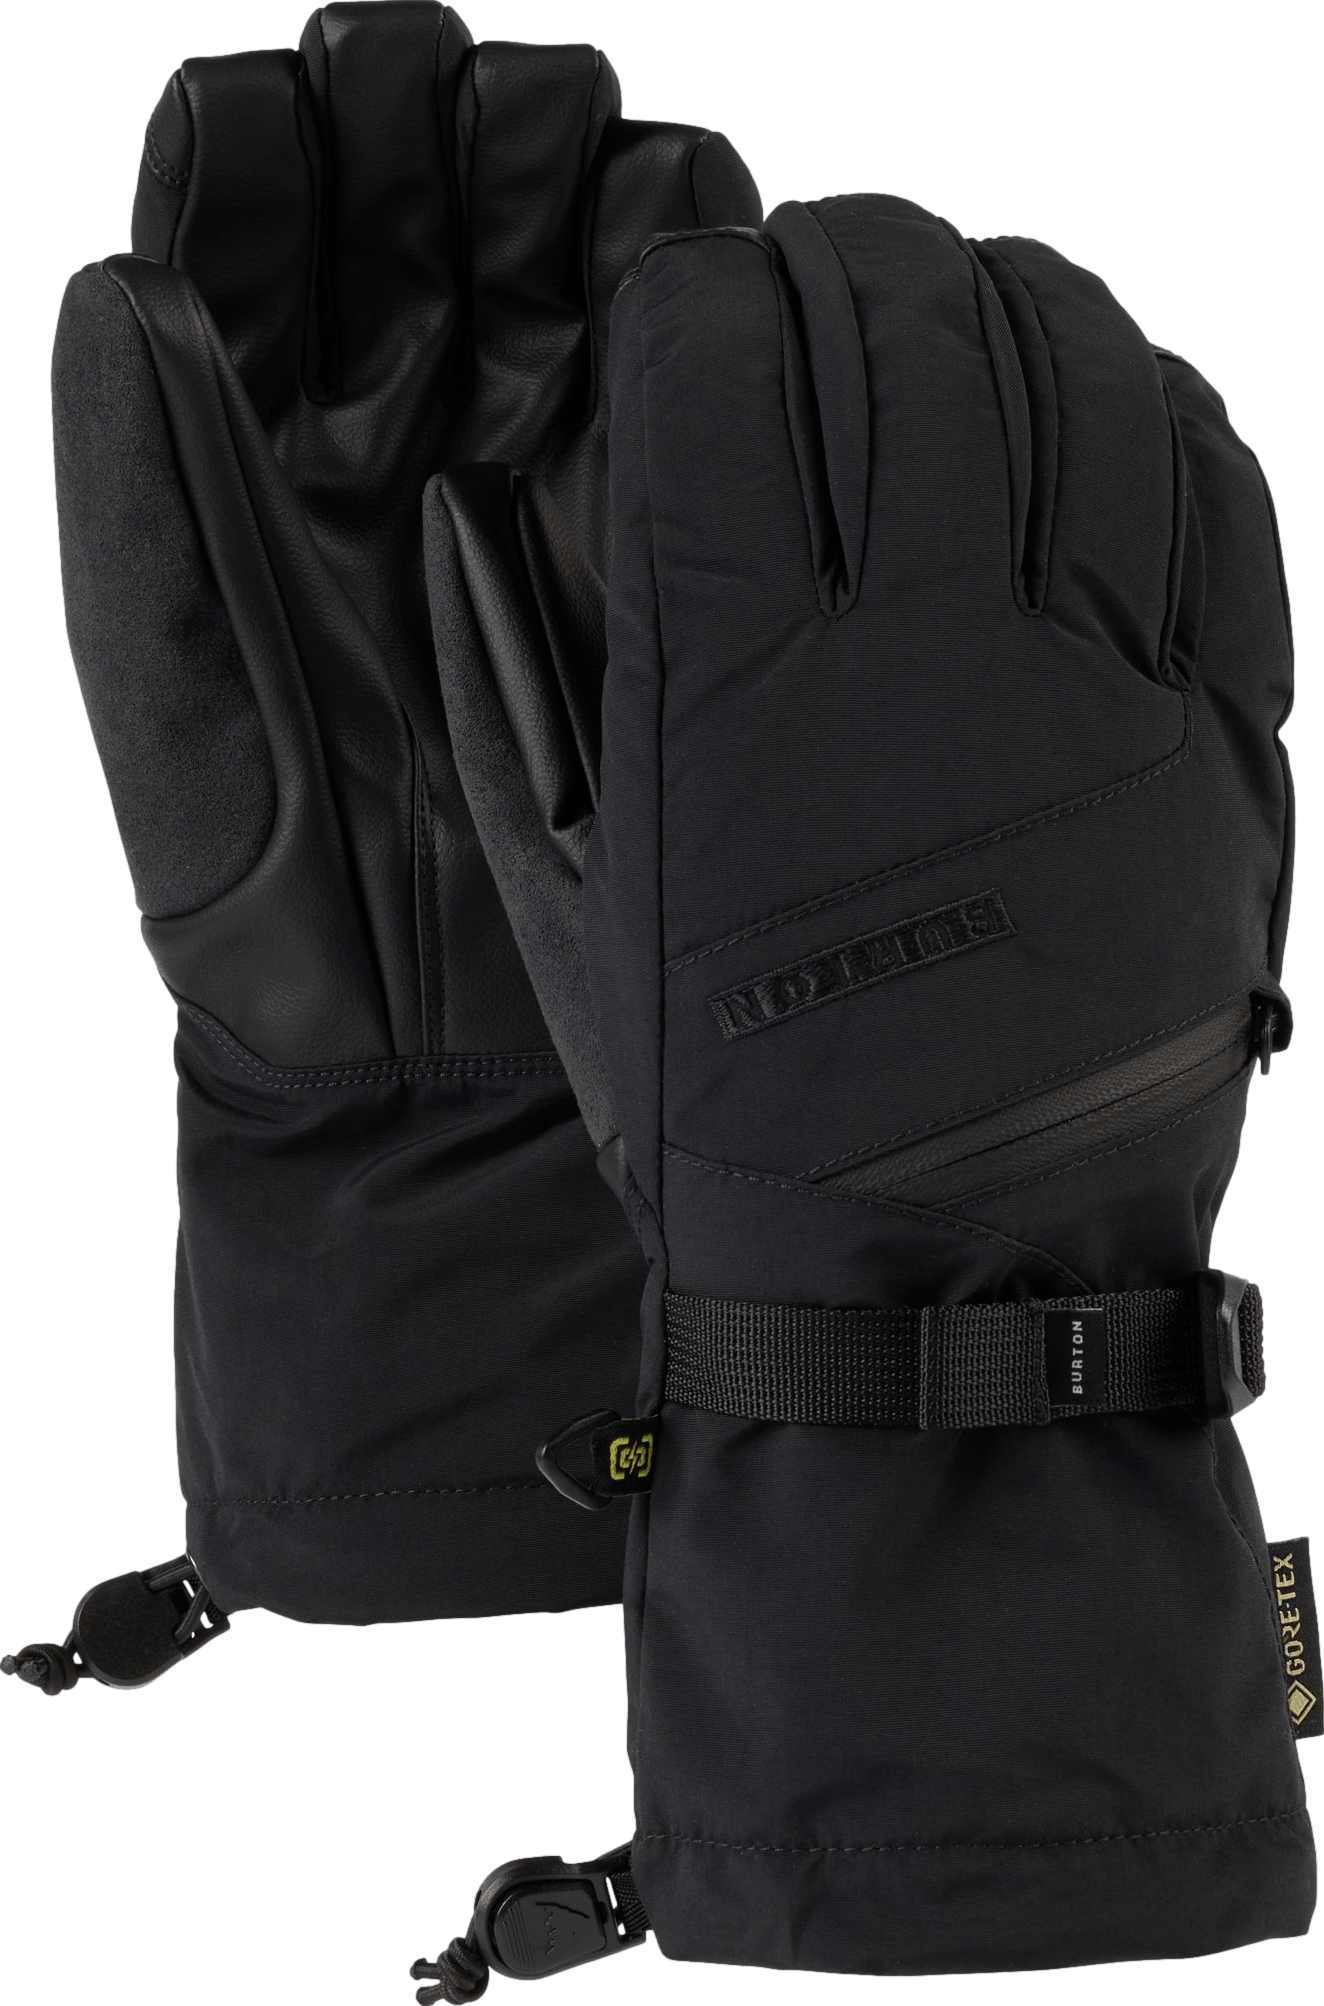 Burton Women's GORE-TEX Gloves